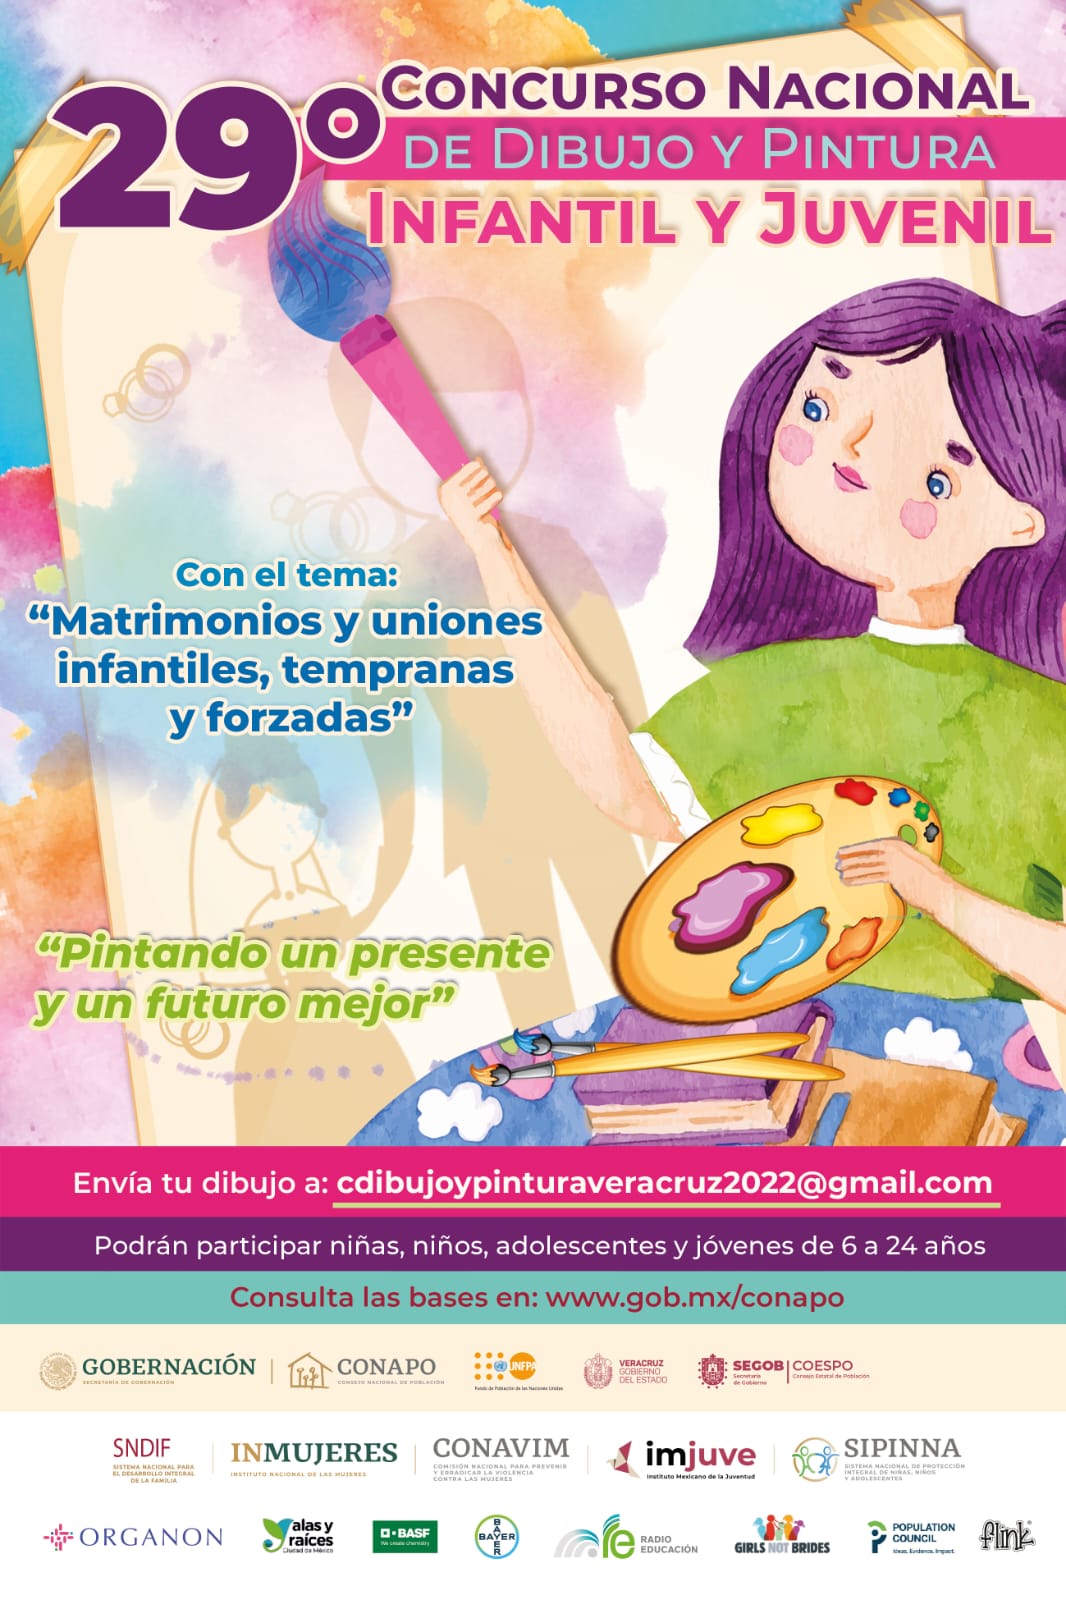 Invitan al 29° Concurso Nacional de Dibujo y Pintura Infantil y Juvenil 2022